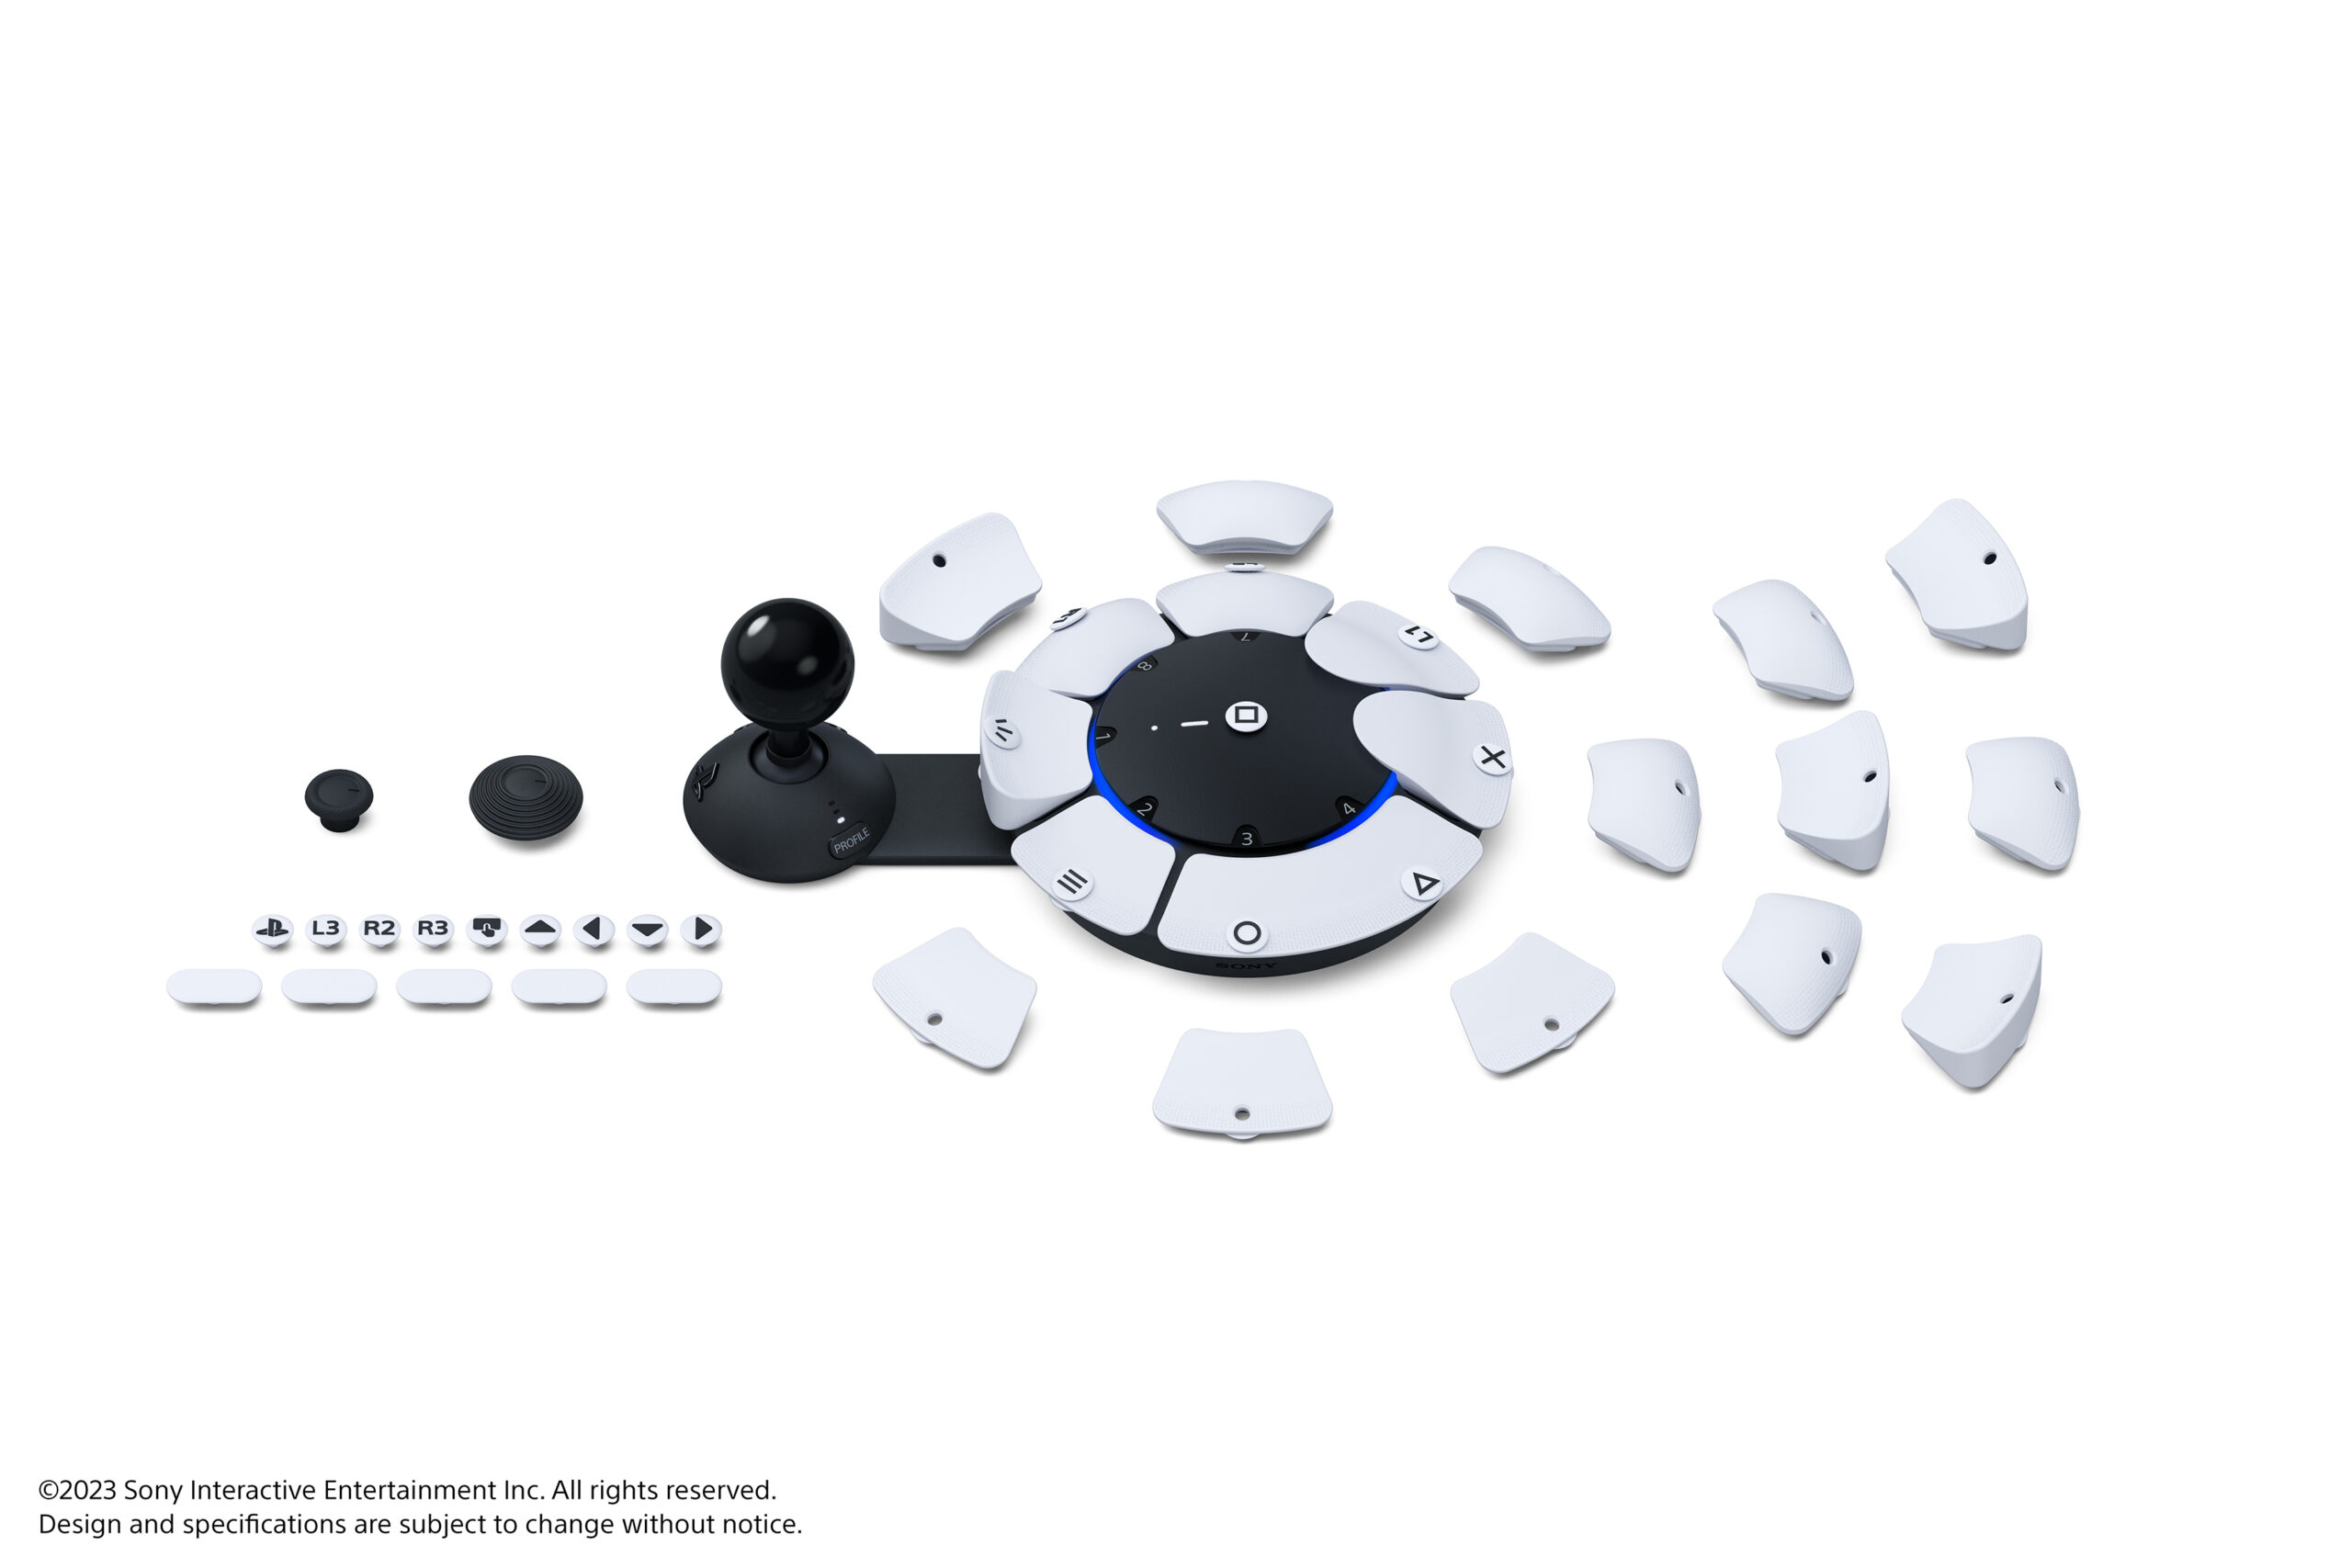  "Imagen que muestra el mando Access y sus almohadillas de joystick, almohadillas de botón y etiquetas de almohadilla de botón intercambiables"